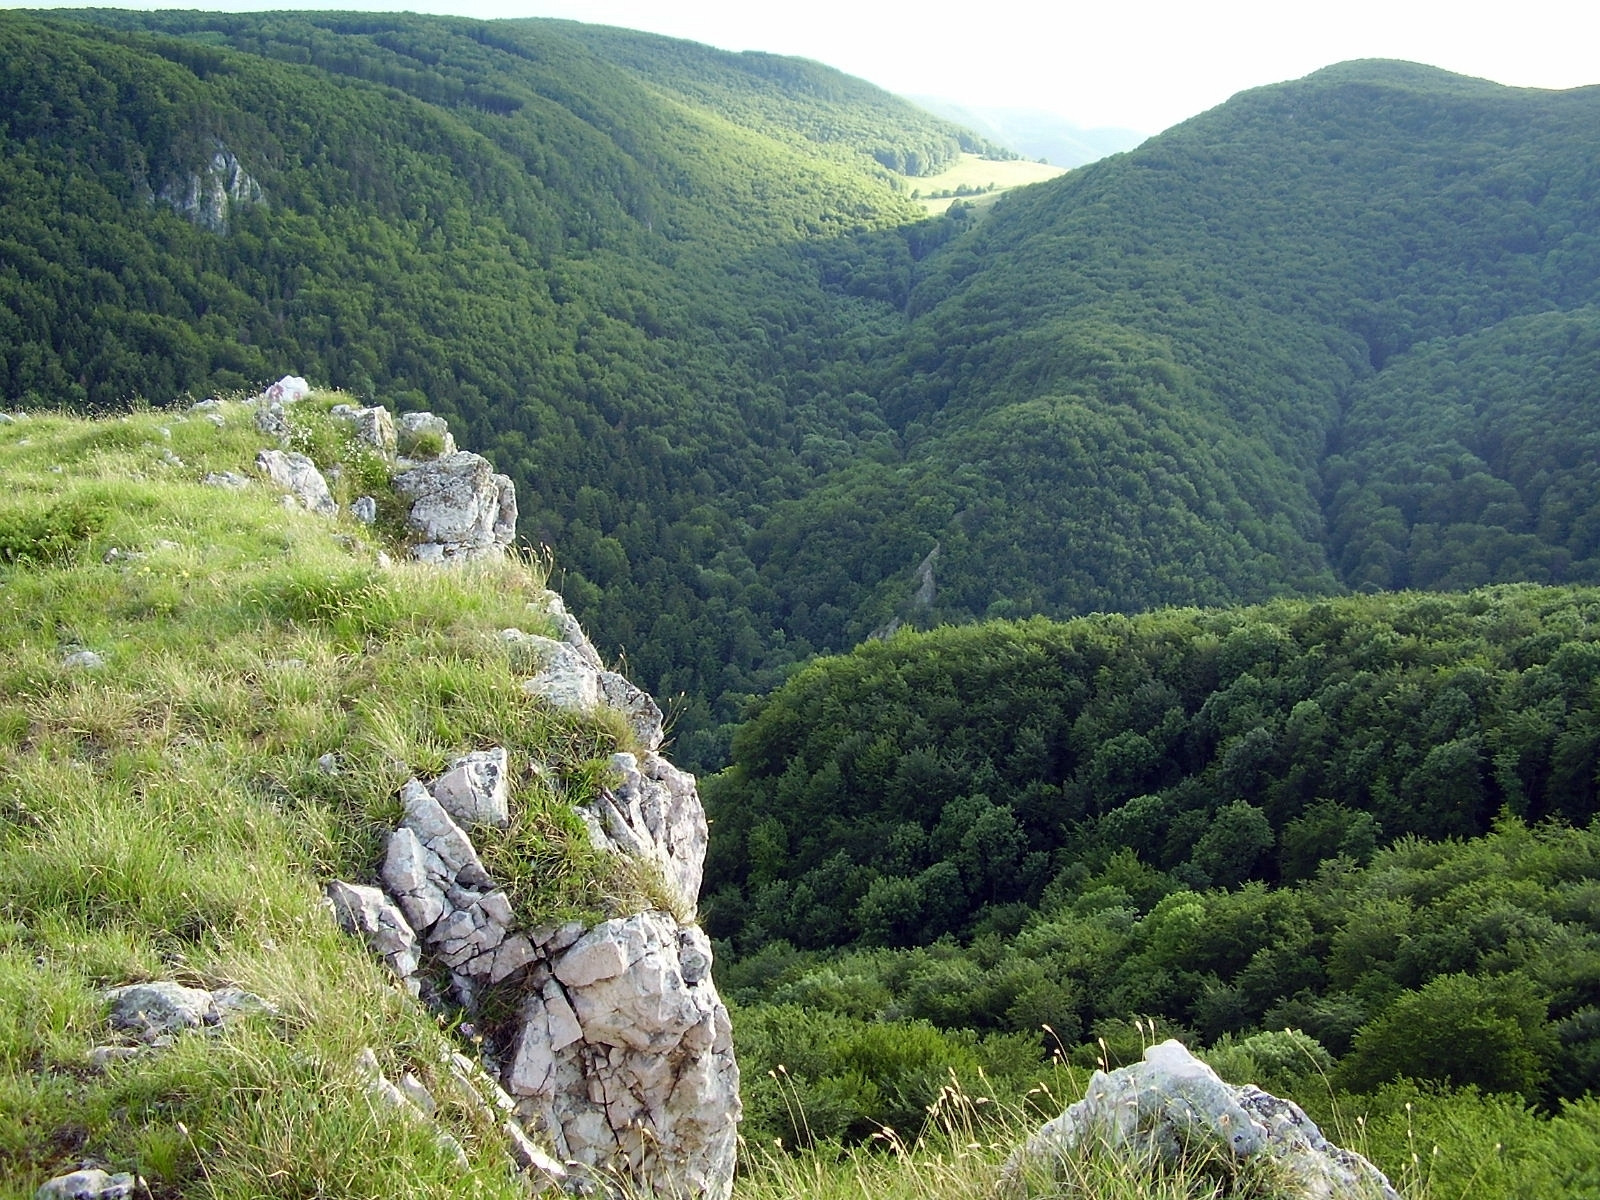 Už podľa názvu je jasné, že na tomto území nájdete početné krasové útvary. Slovenský kras neďaleko maďarských hraníc je najväčším krasovým územím v strednej Európe. Zároveň má najviac podzemných priestorov, jaskýň a priepastí - viac ako 1100. Svojou výnimočnosťou to dotiahli až na zoznam svetového prírodného dedičstva UNESCO. Napríklad jaskynný systém Skalistého potoka je dlhý až 5,6 kilometra. Samozrejme, aj tu nájdete bohatú sieť turistických trás, cyklotrás ale aj kopec možností na horolezectvo alebo bežkovanie. Ak vás Slovenský kras zaujal, zamierte do okresov Rožňava a Košice-okolie. 

Tipy na výlet: jaskyňa Domica, Zádielska tiesňava, Krásnohorská jaskyňa, Silická ľadnica, kaštieľ Betliar